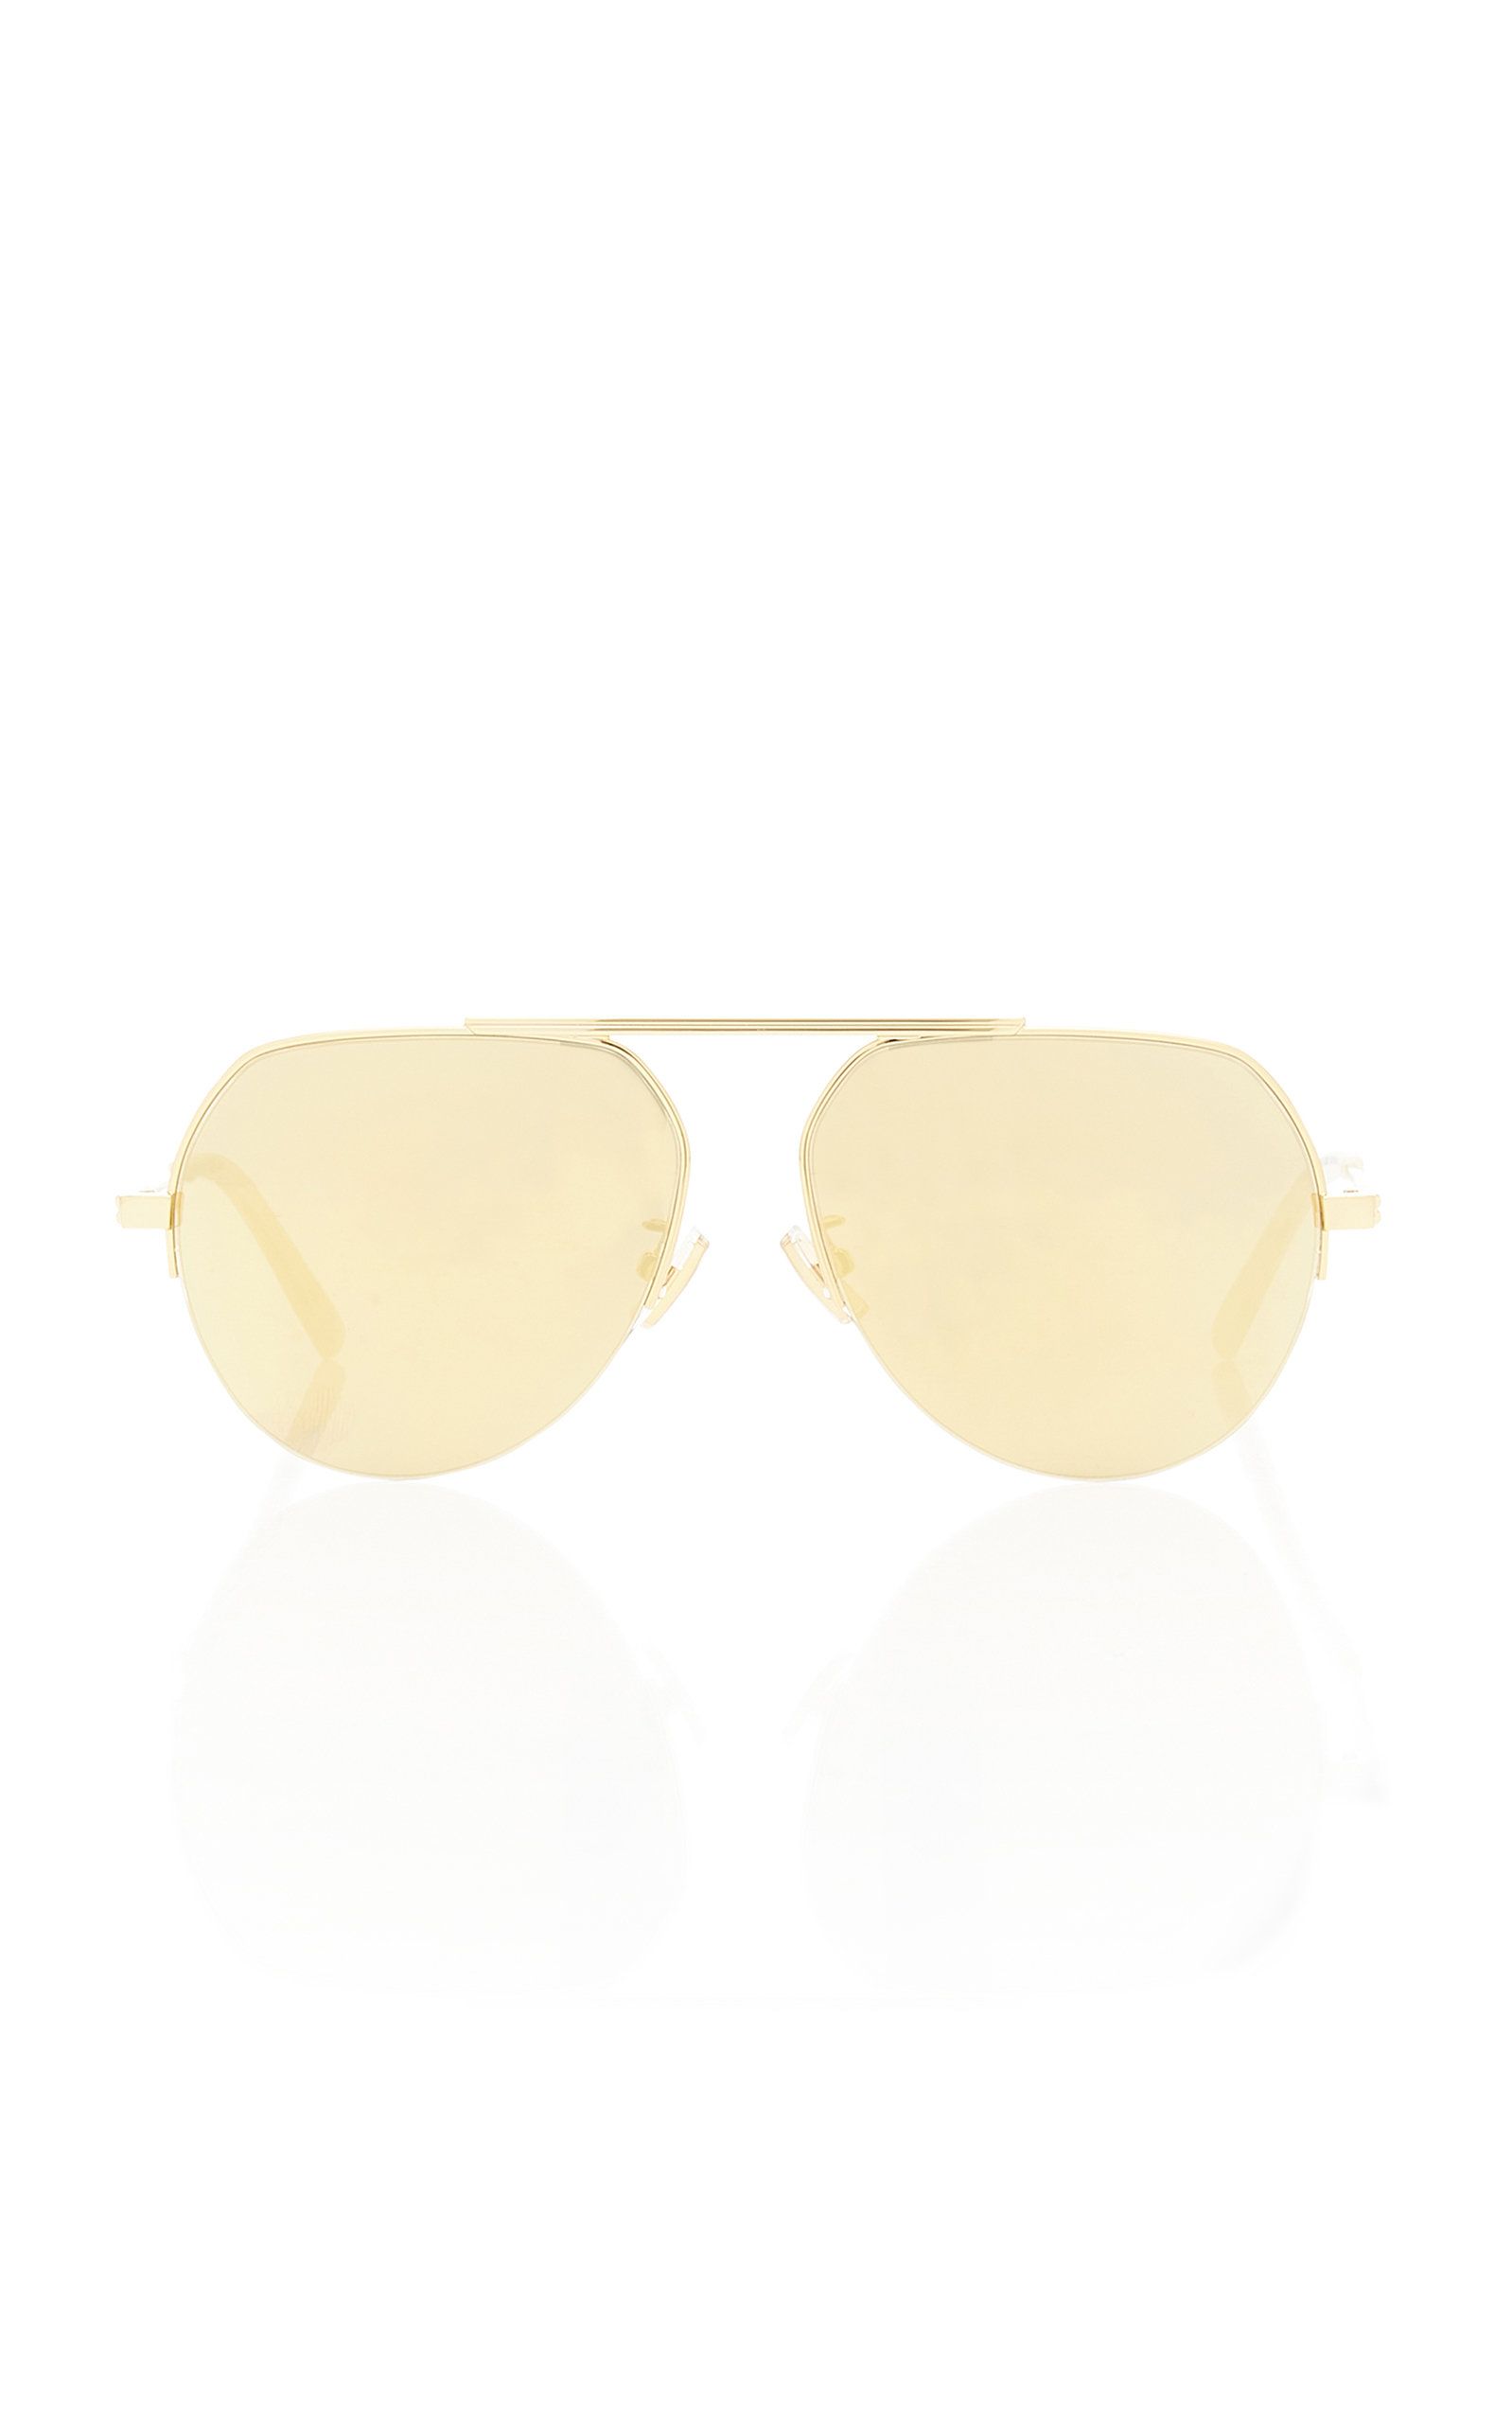 Bottega Veneta - Women's Pilot Metal Sunglasses - Gold - OS - Moda Operandi | Moda Operandi (Global)